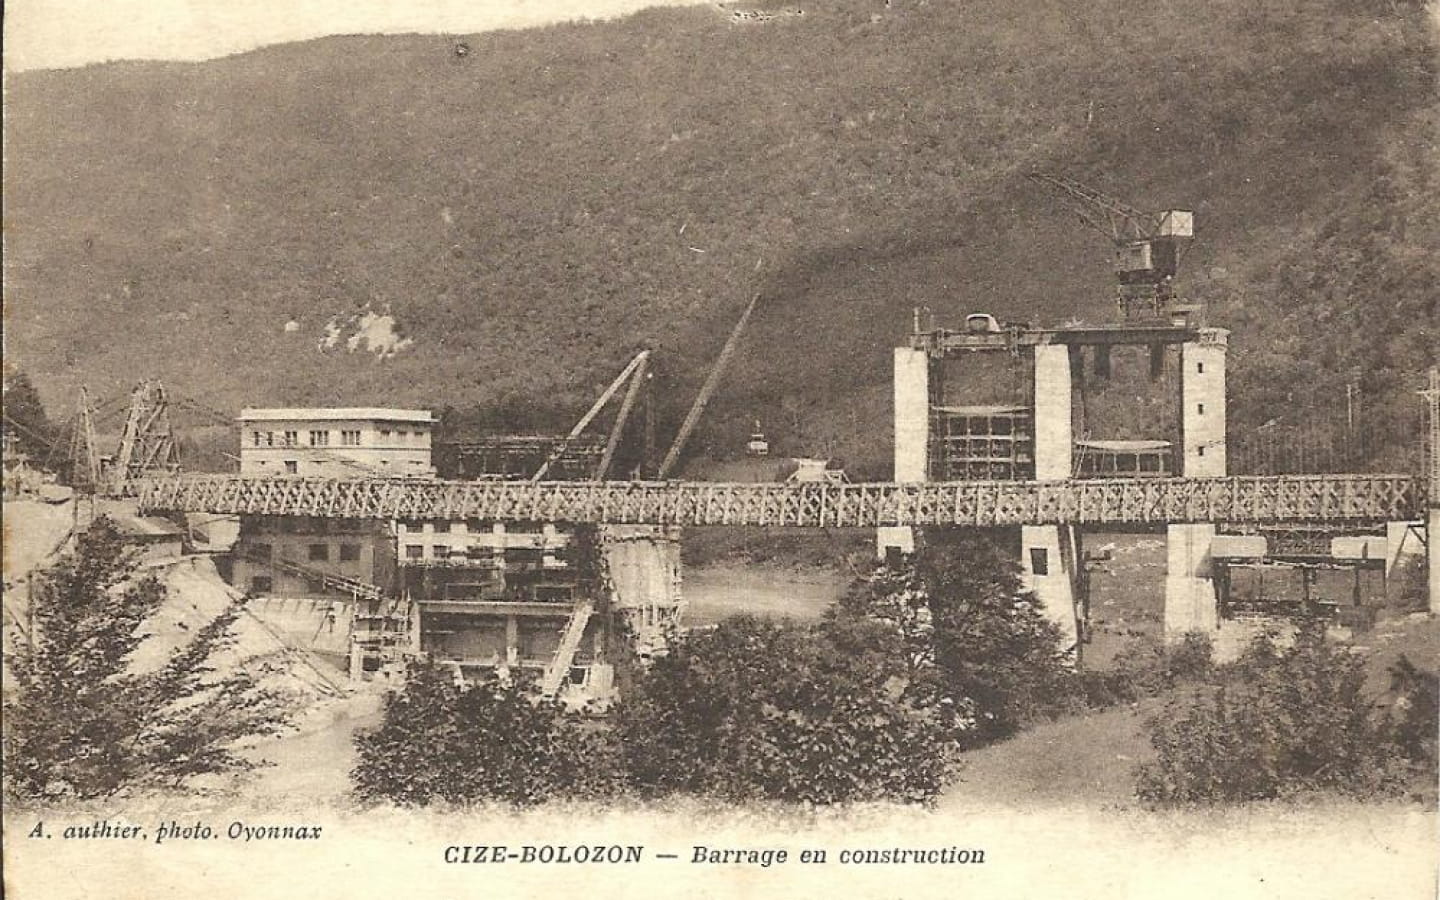 Barrage de Cize-Bolozon